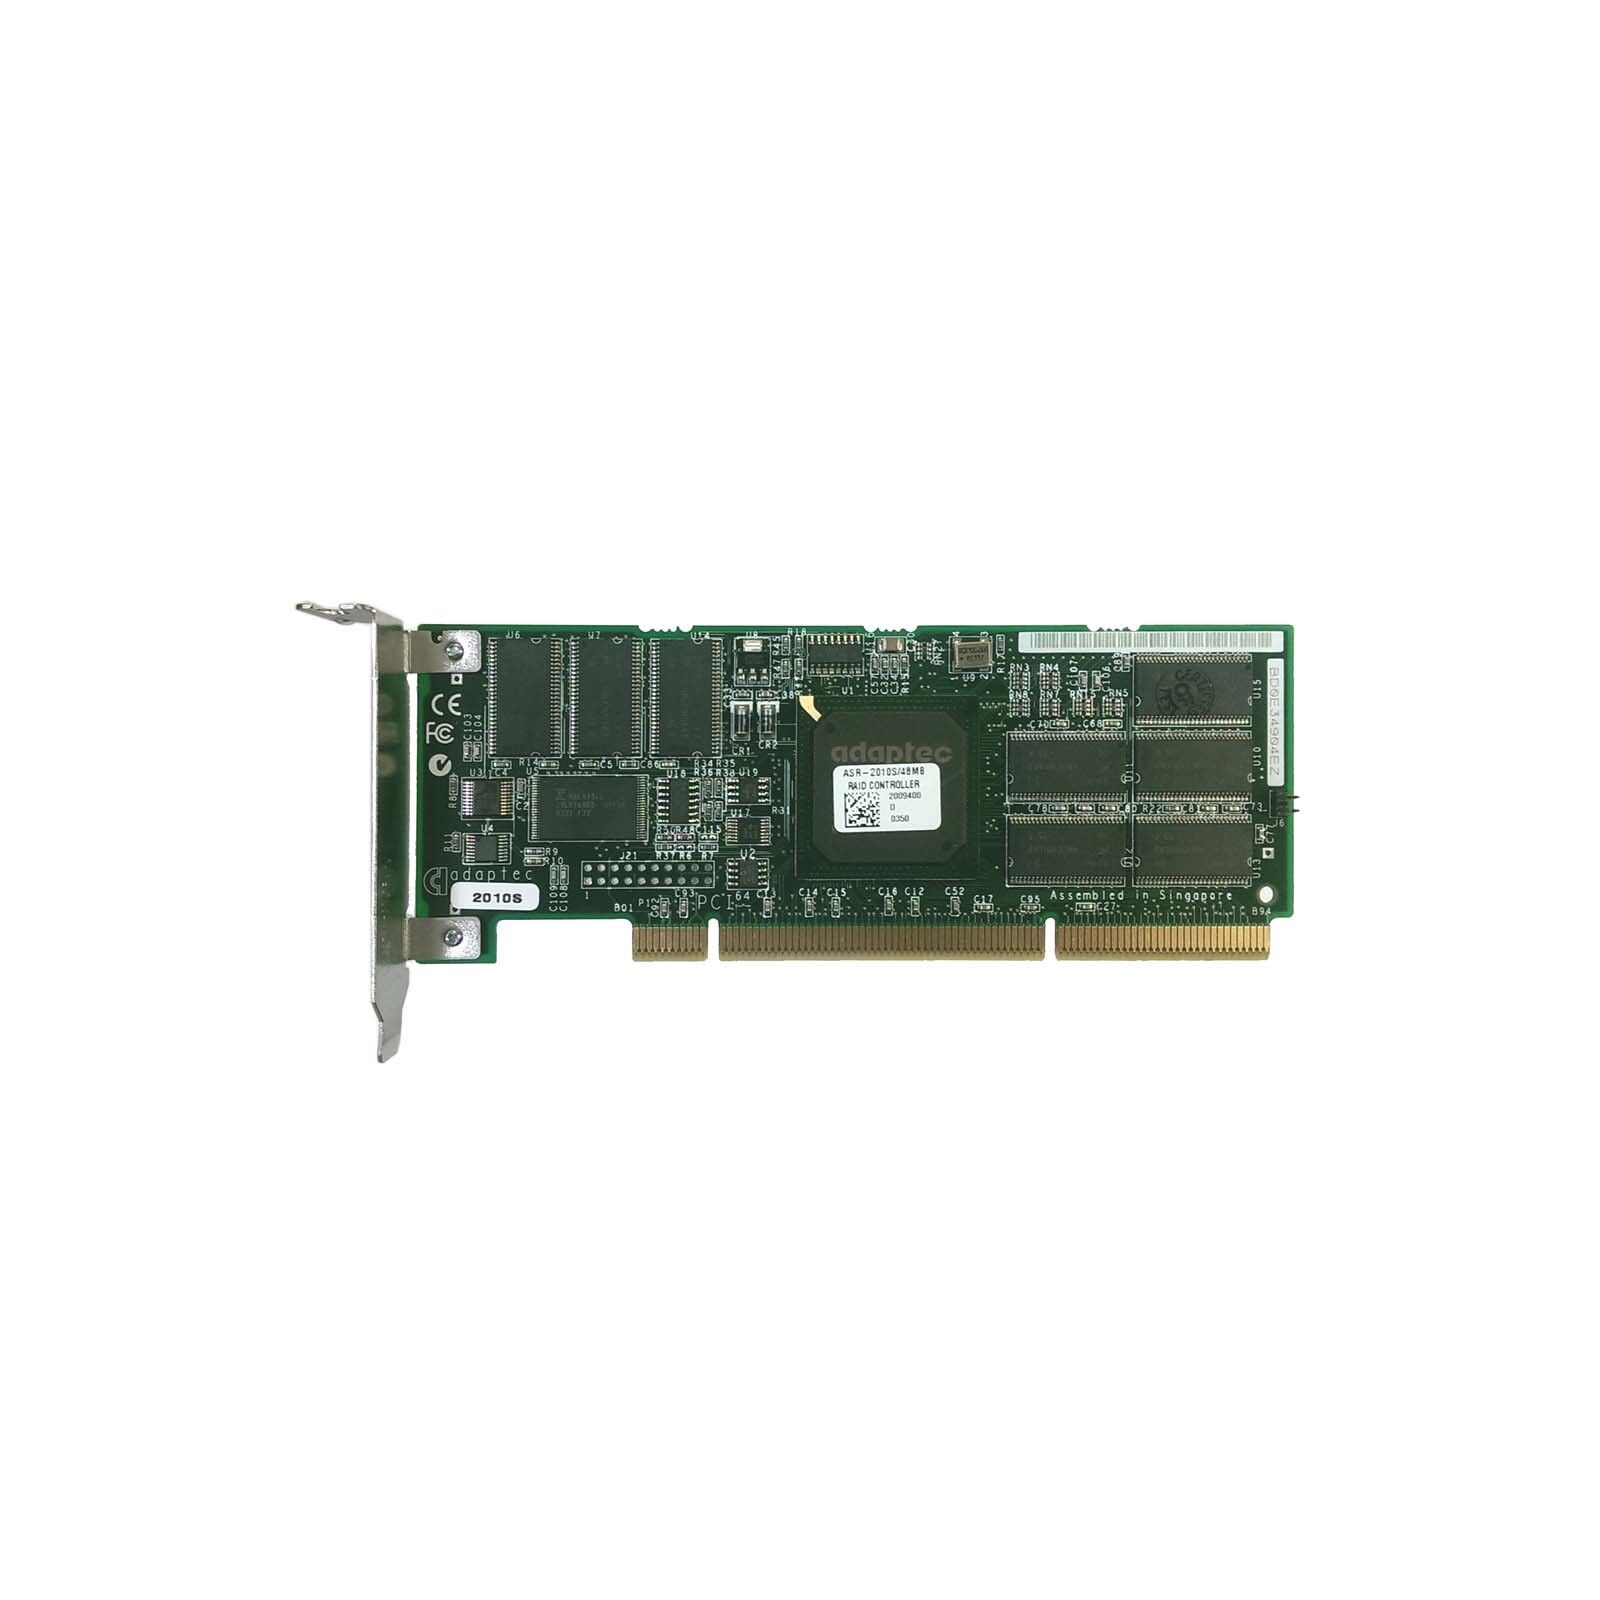 SCSI RAID Controller Adapter Card PCIX PCI-X Adaptec ASR-2010S/48MB Ultra320